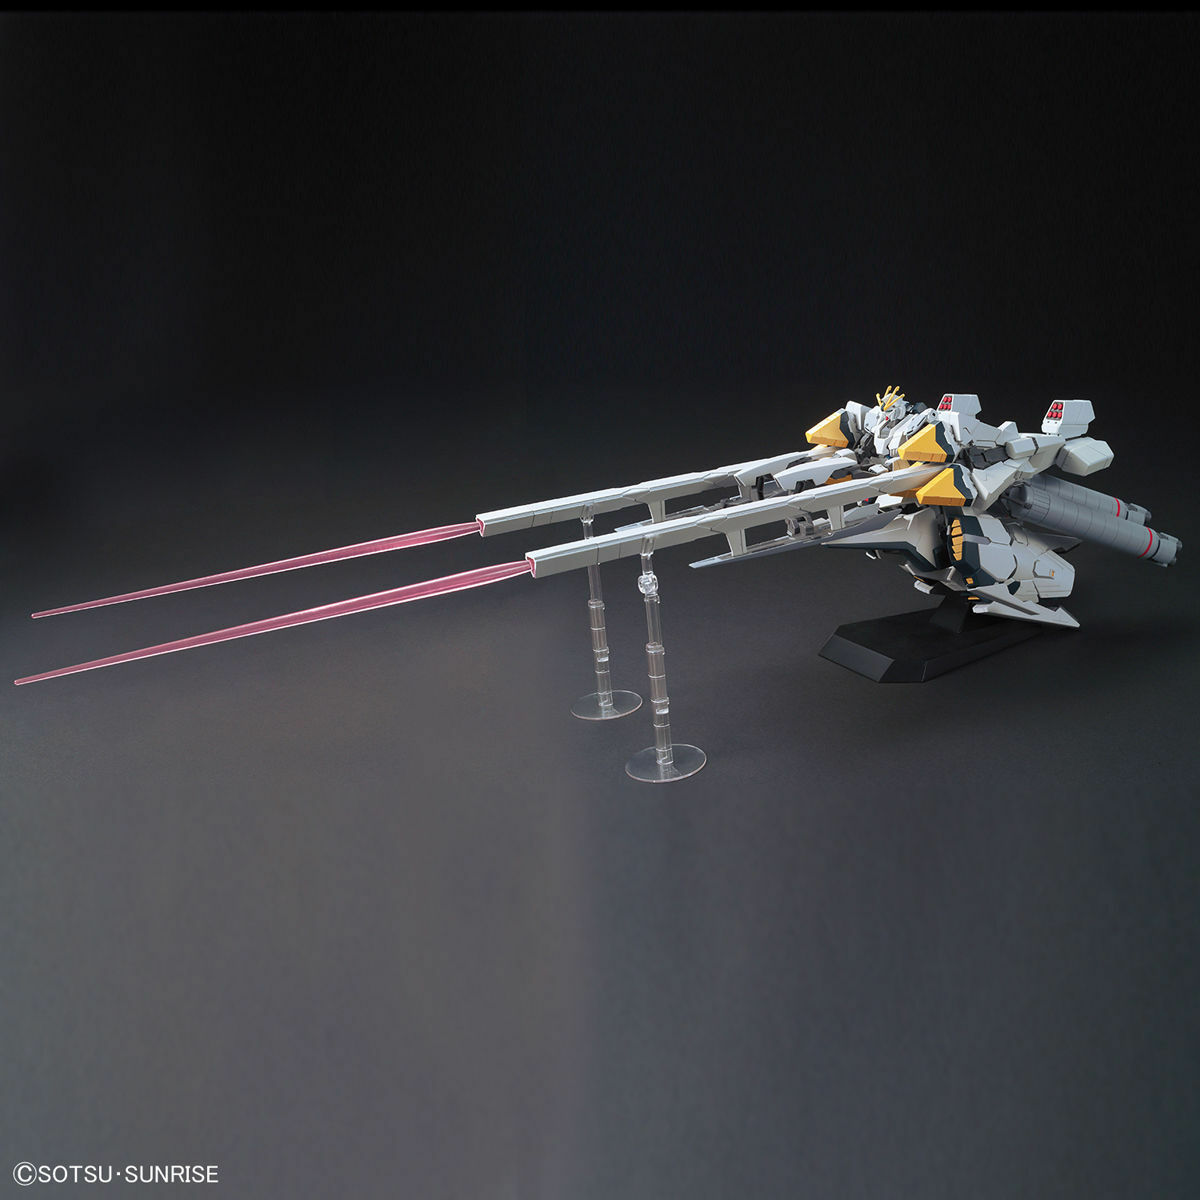 HGUC - RX-9/A Narrative Gundam A-Packs